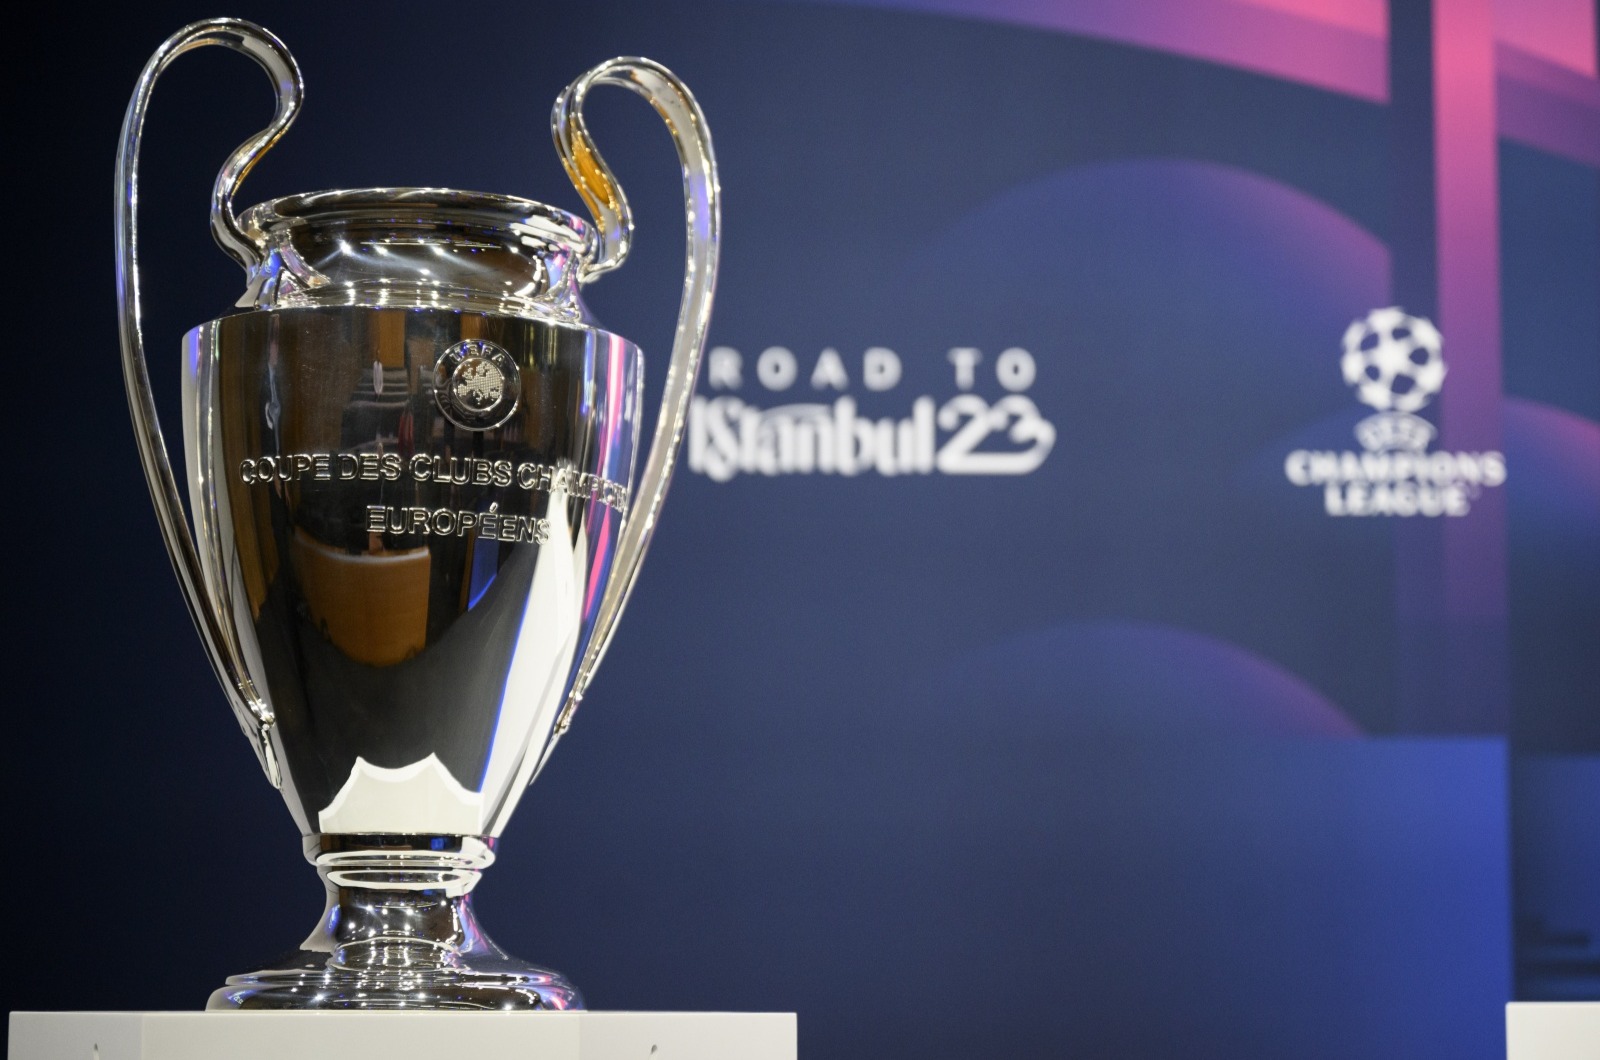 Sorteios dos quartos-de-final, das meias-finais e da final da UEFA Champions  League, UEFA Champions League 2021/22